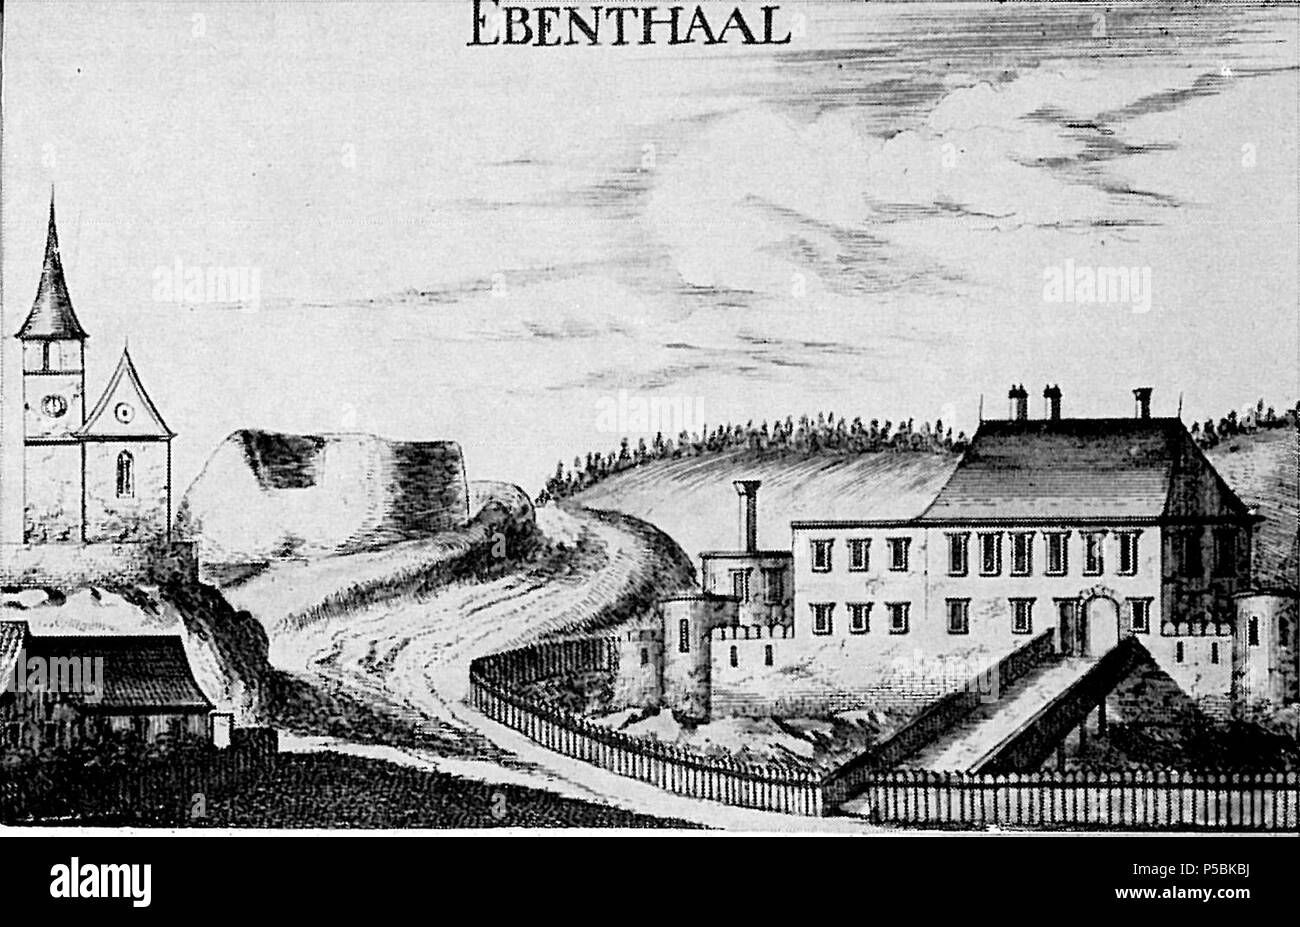 N/A. Deutsch: Erste bildliche Darstellung von Schloss Ebenthal . 1672. Georg Matthäus Vischer (1628–1696) 491 Ebenthal Vischer Stich Stock Photo